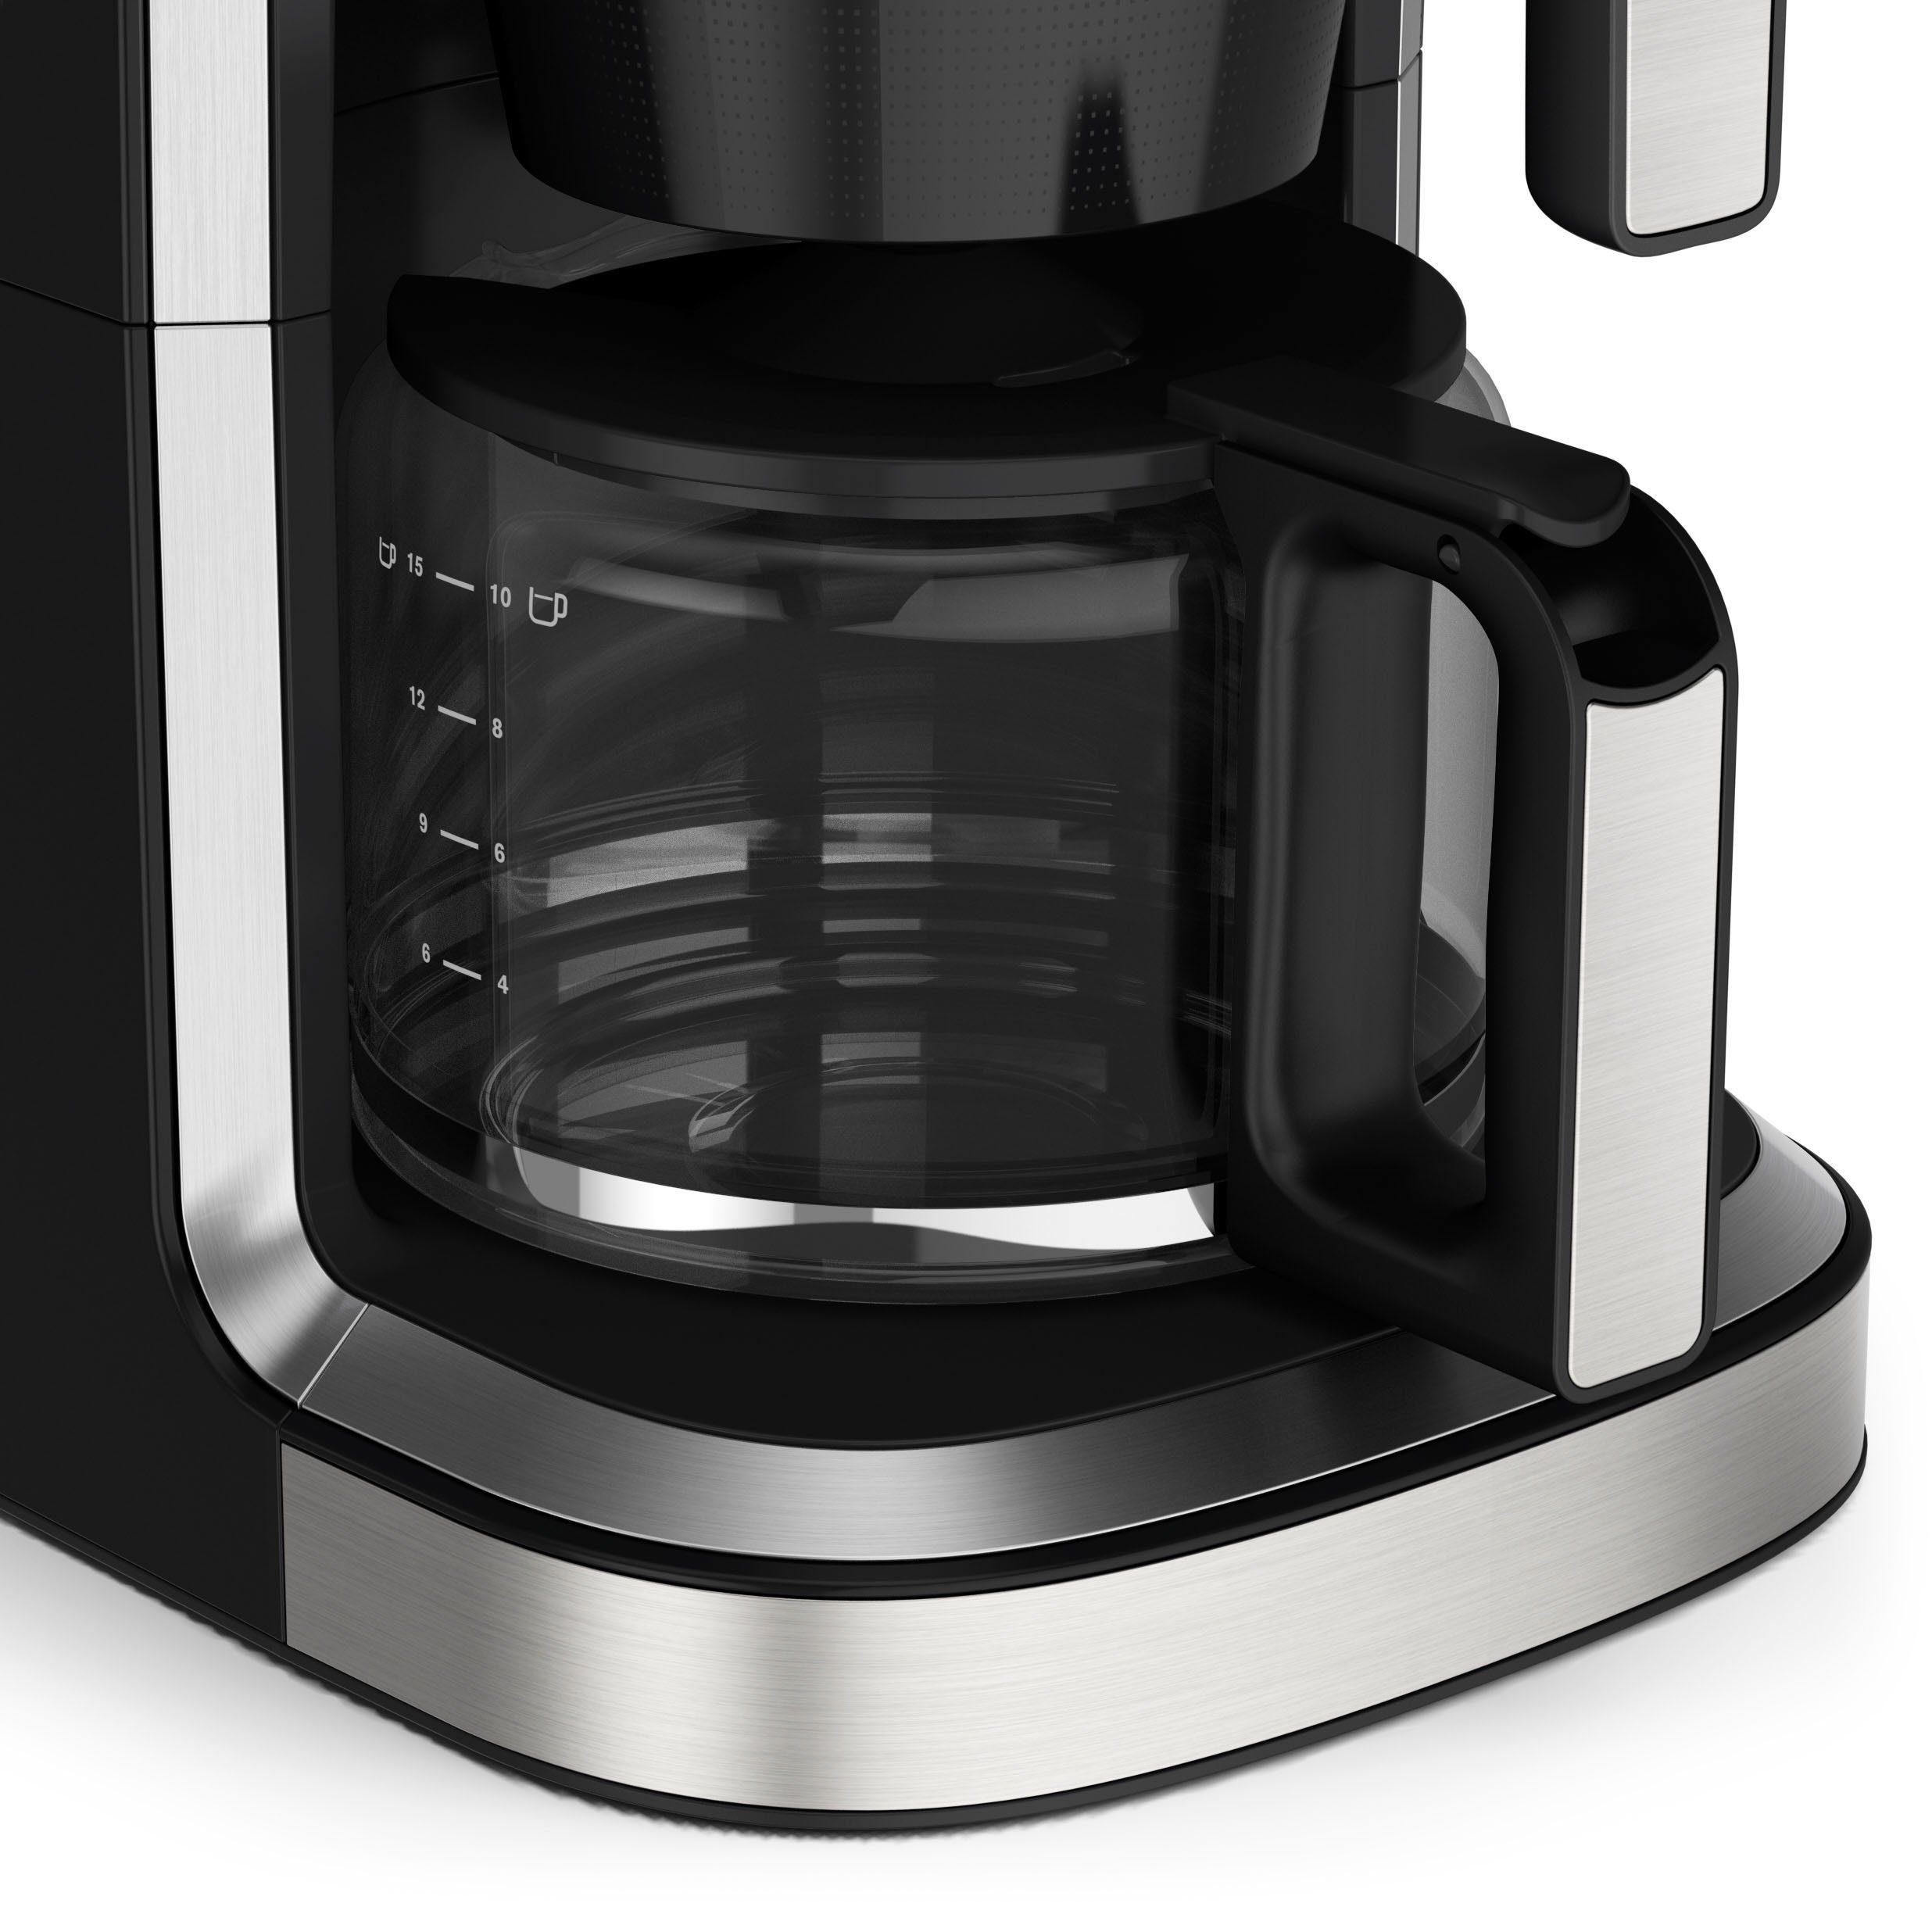 Krups bis integrierte Filterkaffeemaschine Kaffee g Aroma KM760D zu für Partner, Kaffee-Vorratsbox Kaffeekanne, 1,25l 400 frischen